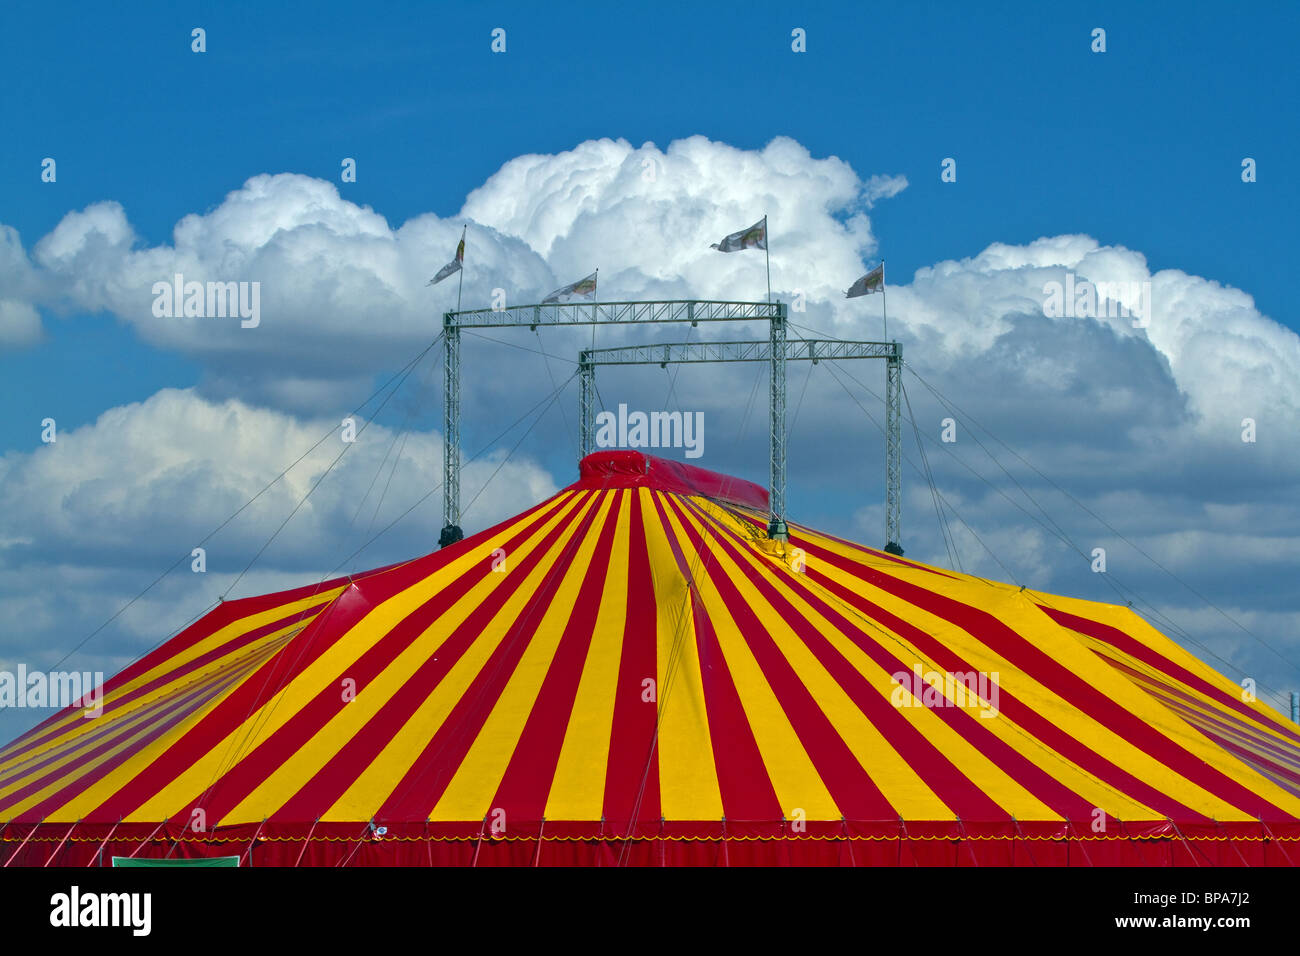 Striped tente de cirque contre un ciel bleu avec des nuages. L'horizontale Banque D'Images